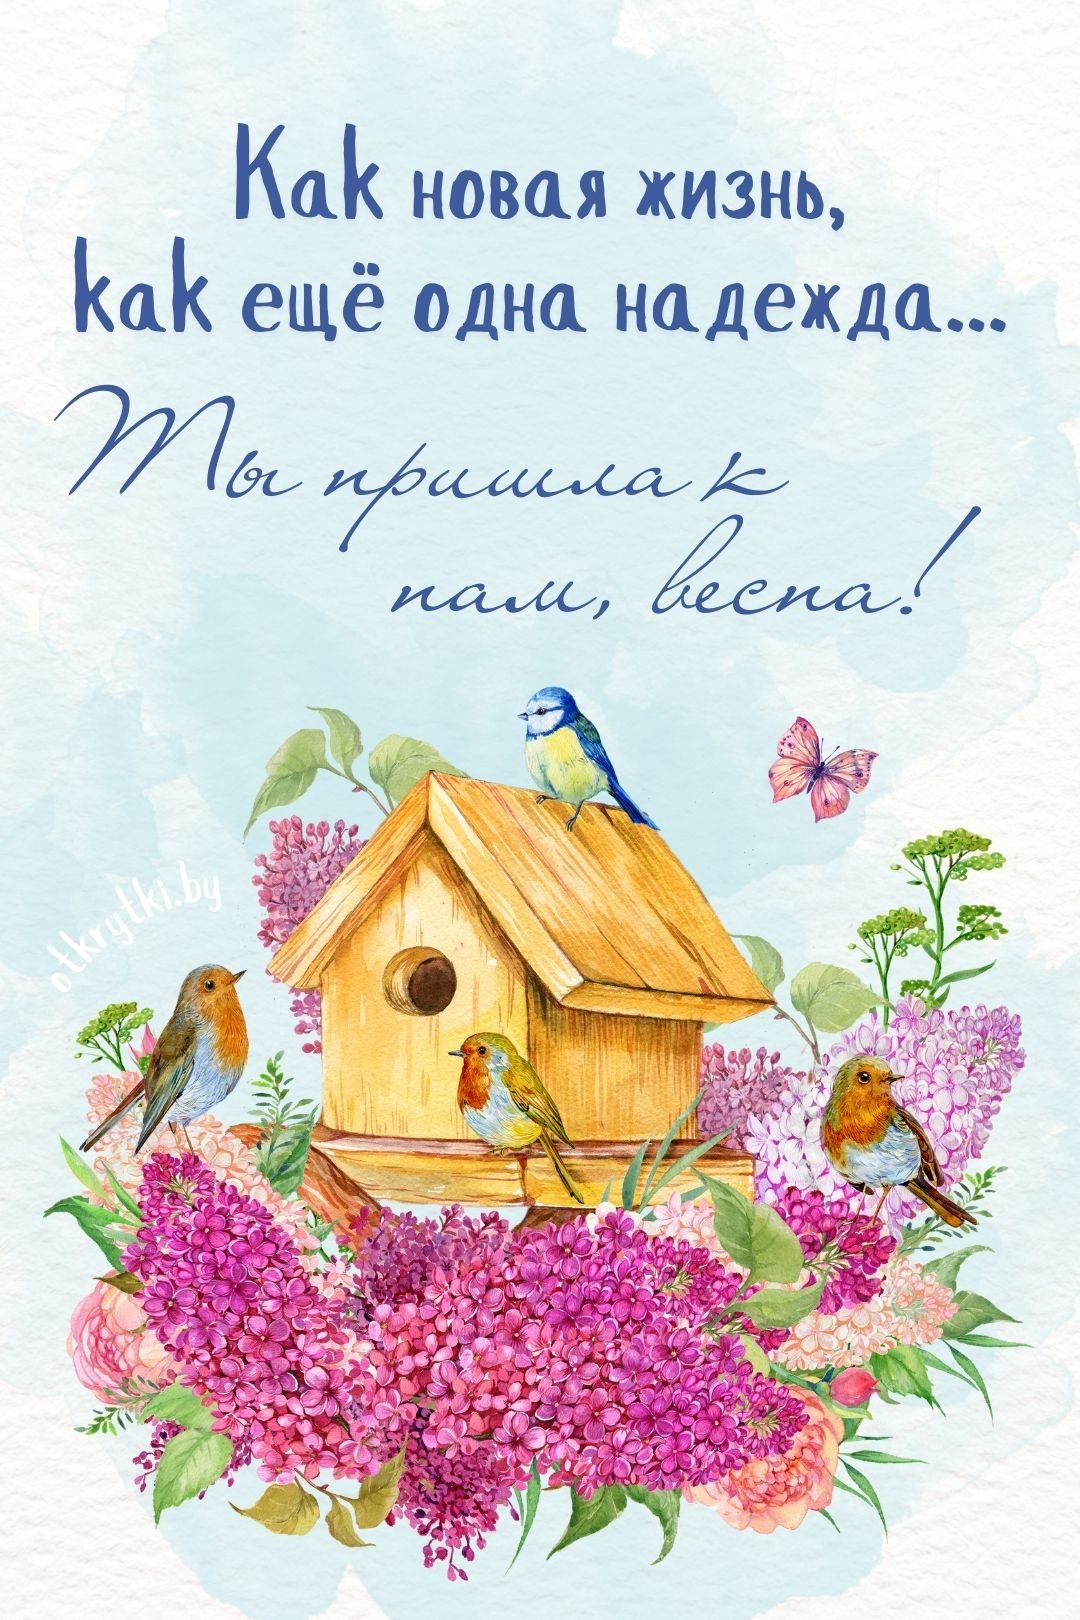 Яркая открытка с надписями про весну